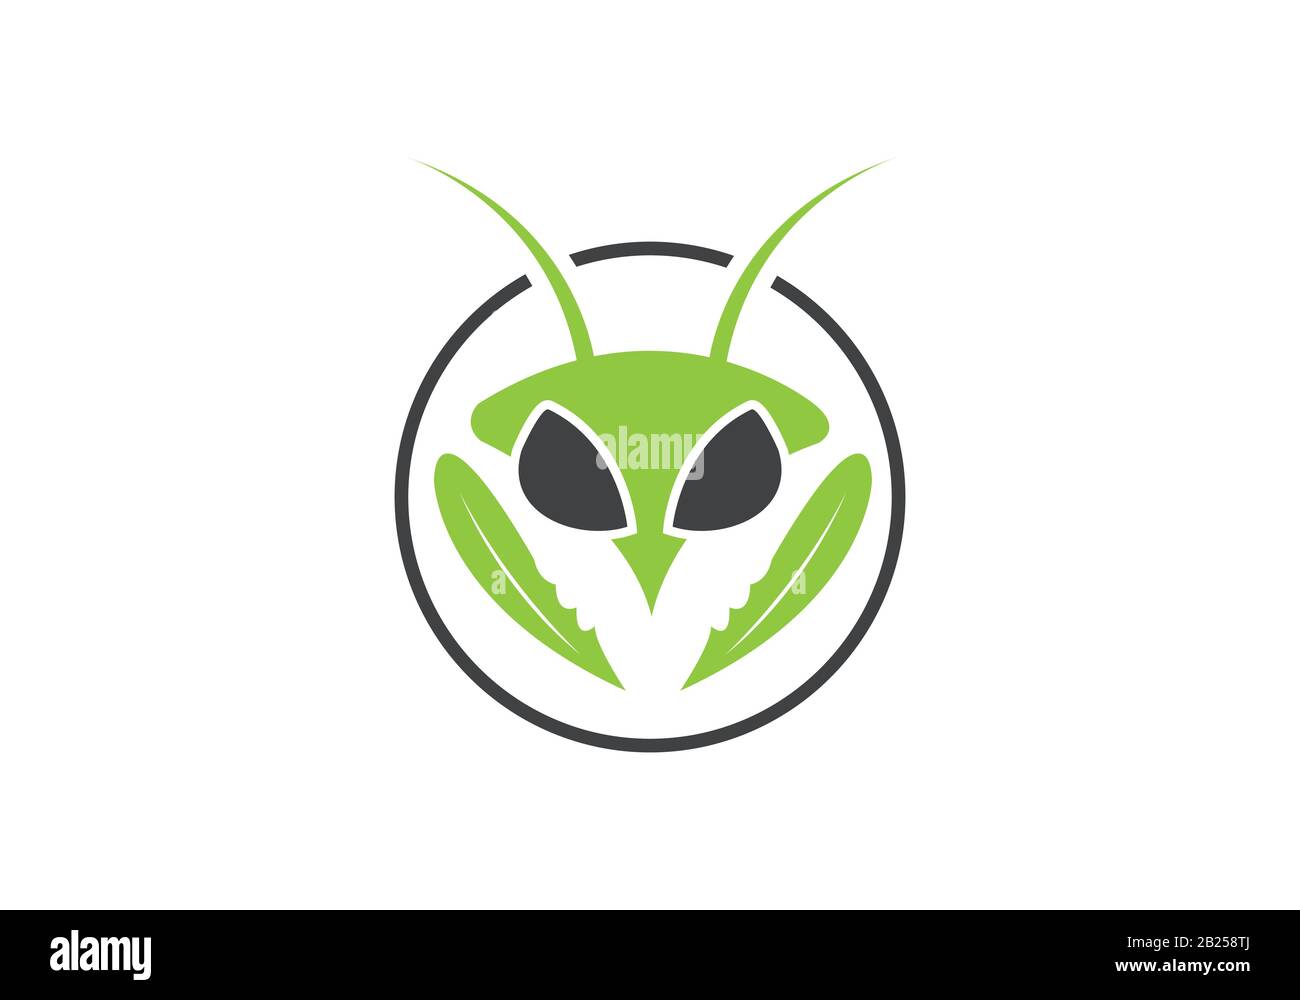 Insetto killer logo, insetto logo design Illustrazione Vettoriale